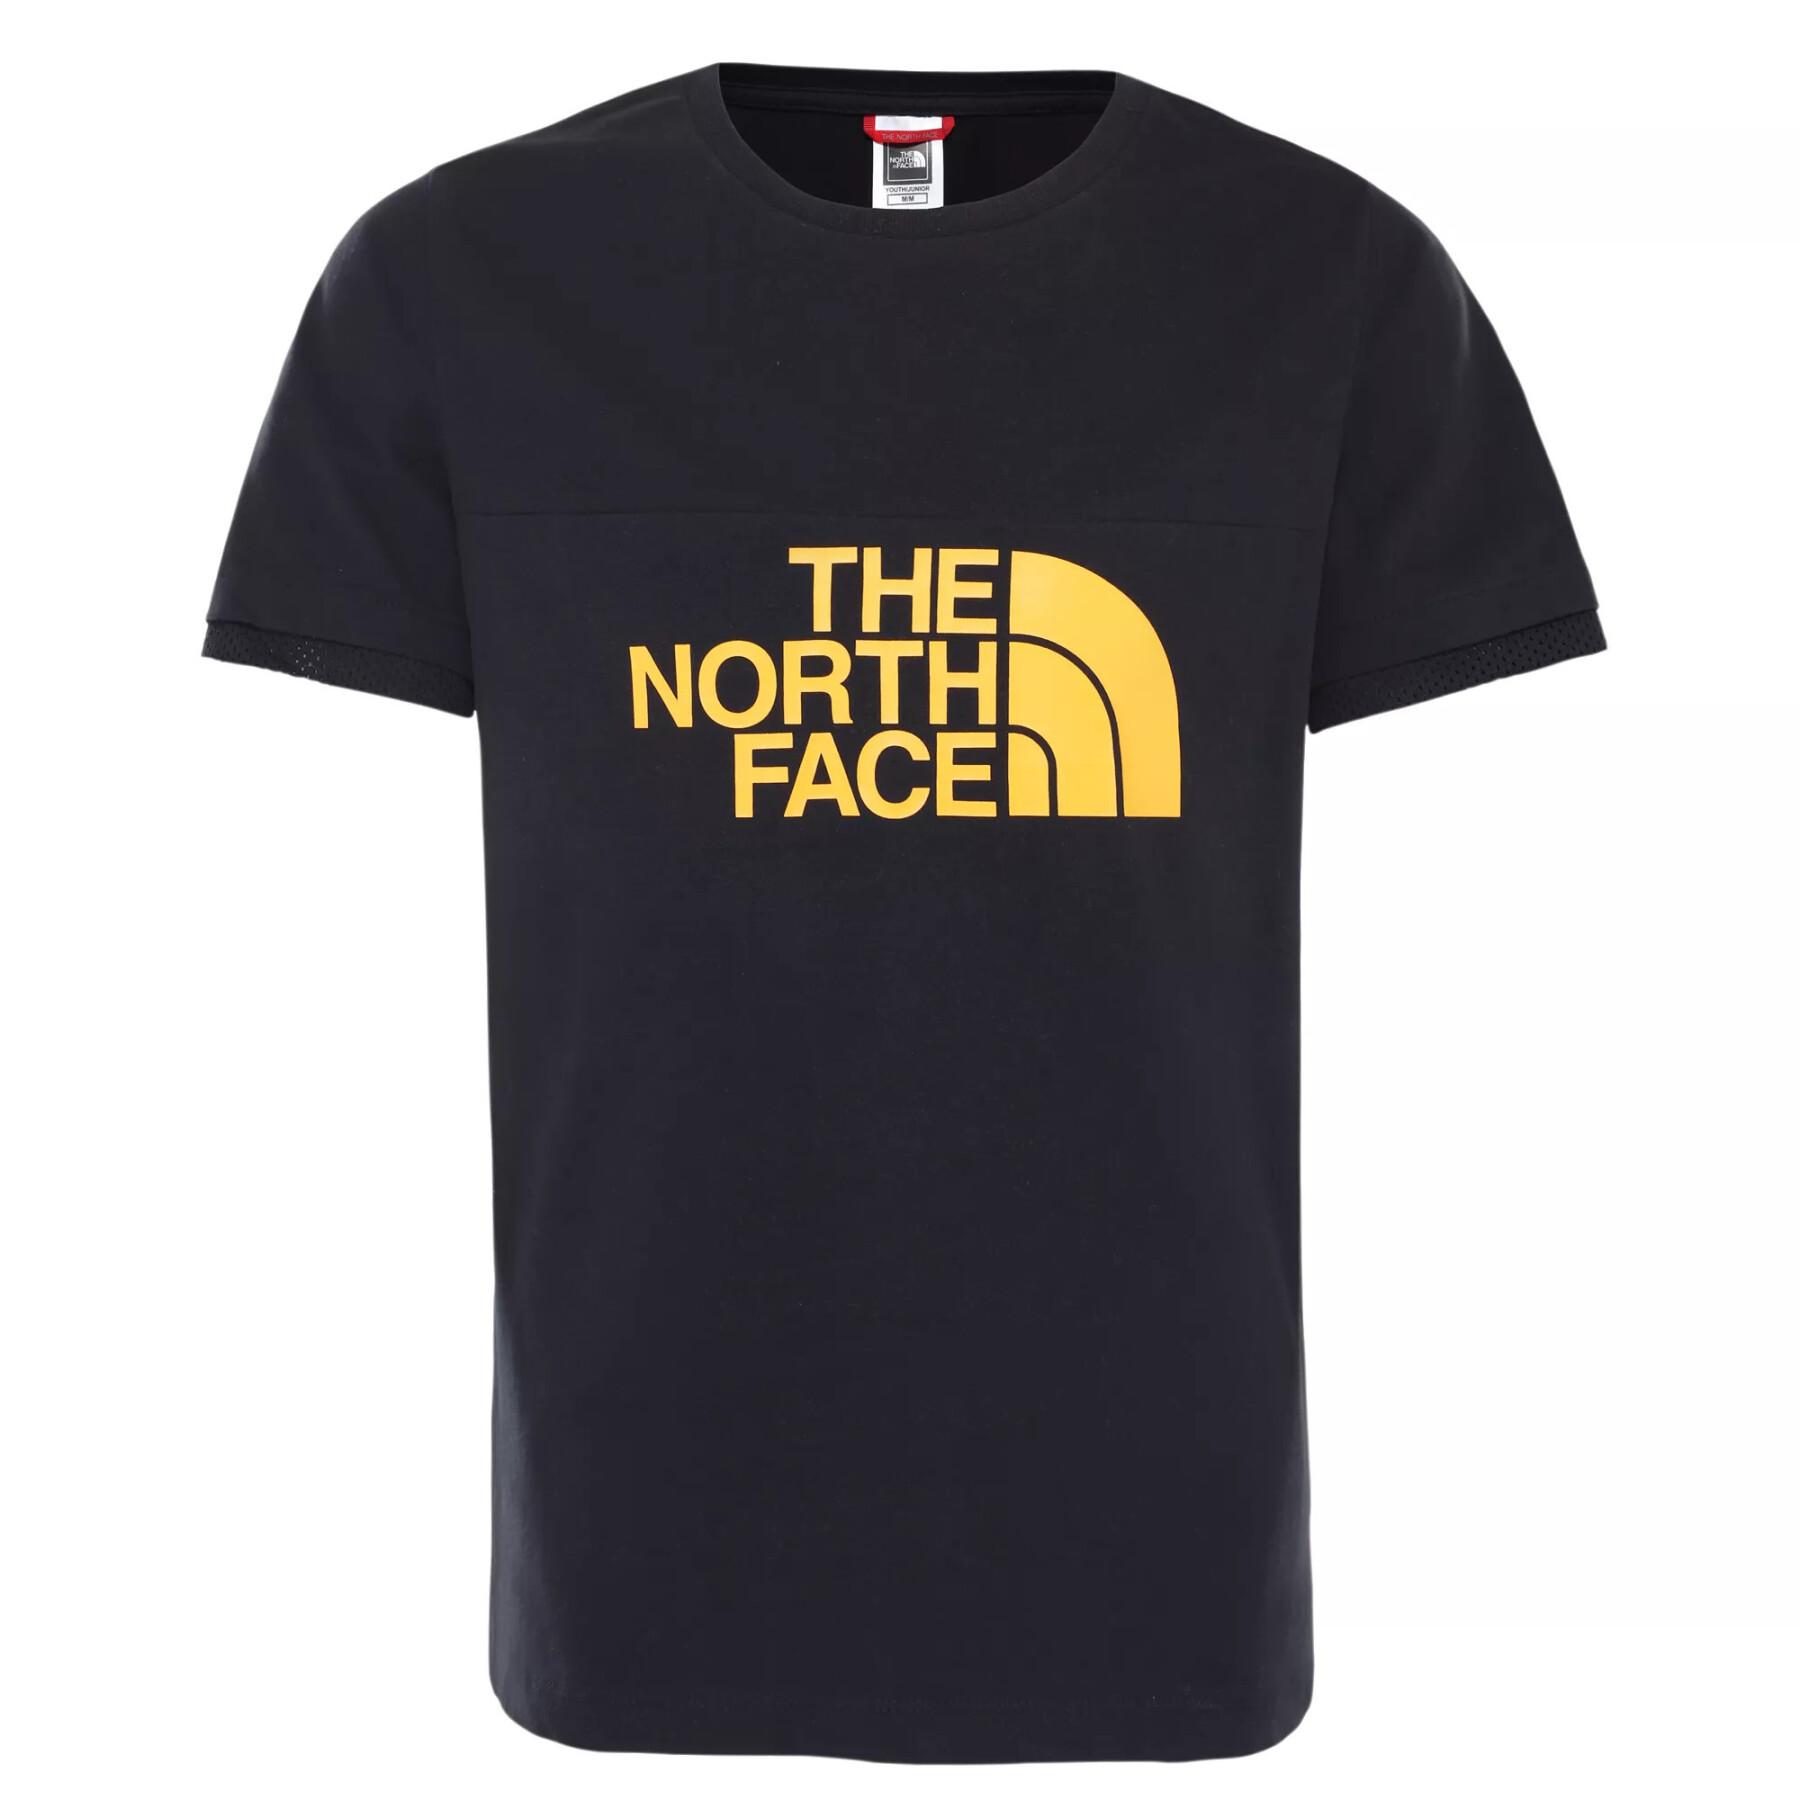 Kinder-T-Shirt The North Face Rafiki